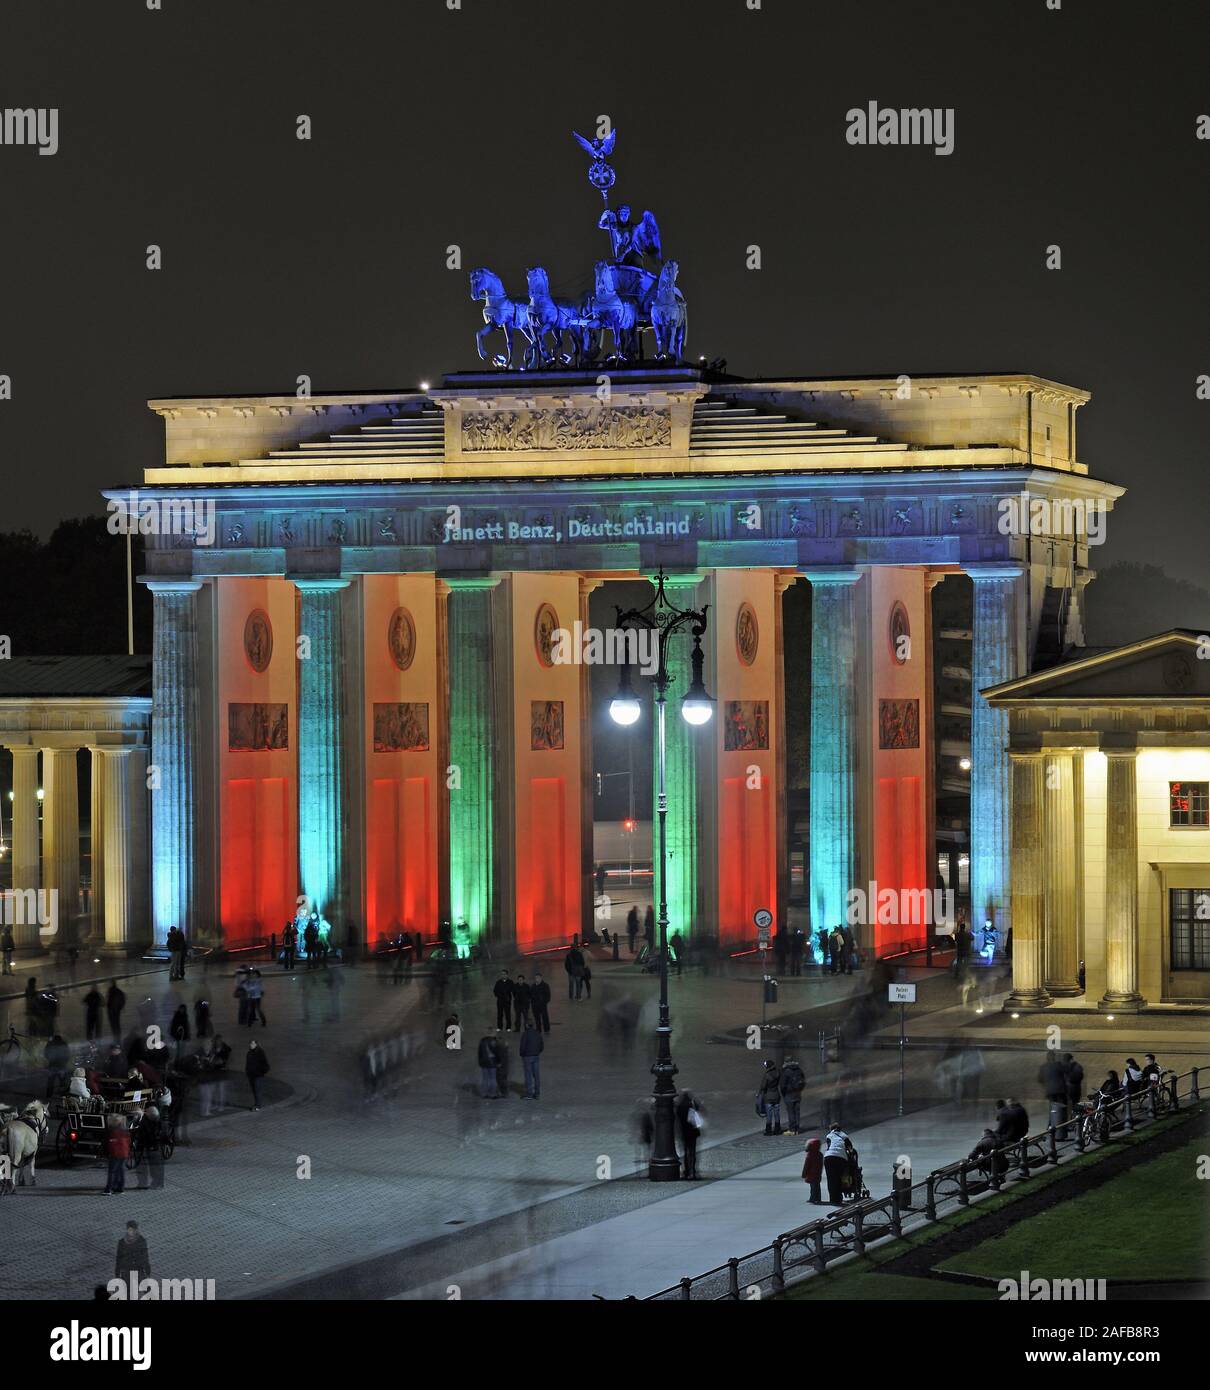 Brandenburger Tor am Pariser Platz, Berlin, Deutschland, Europa, illuminiert zum Festival of Lights 2009 Stock Photo